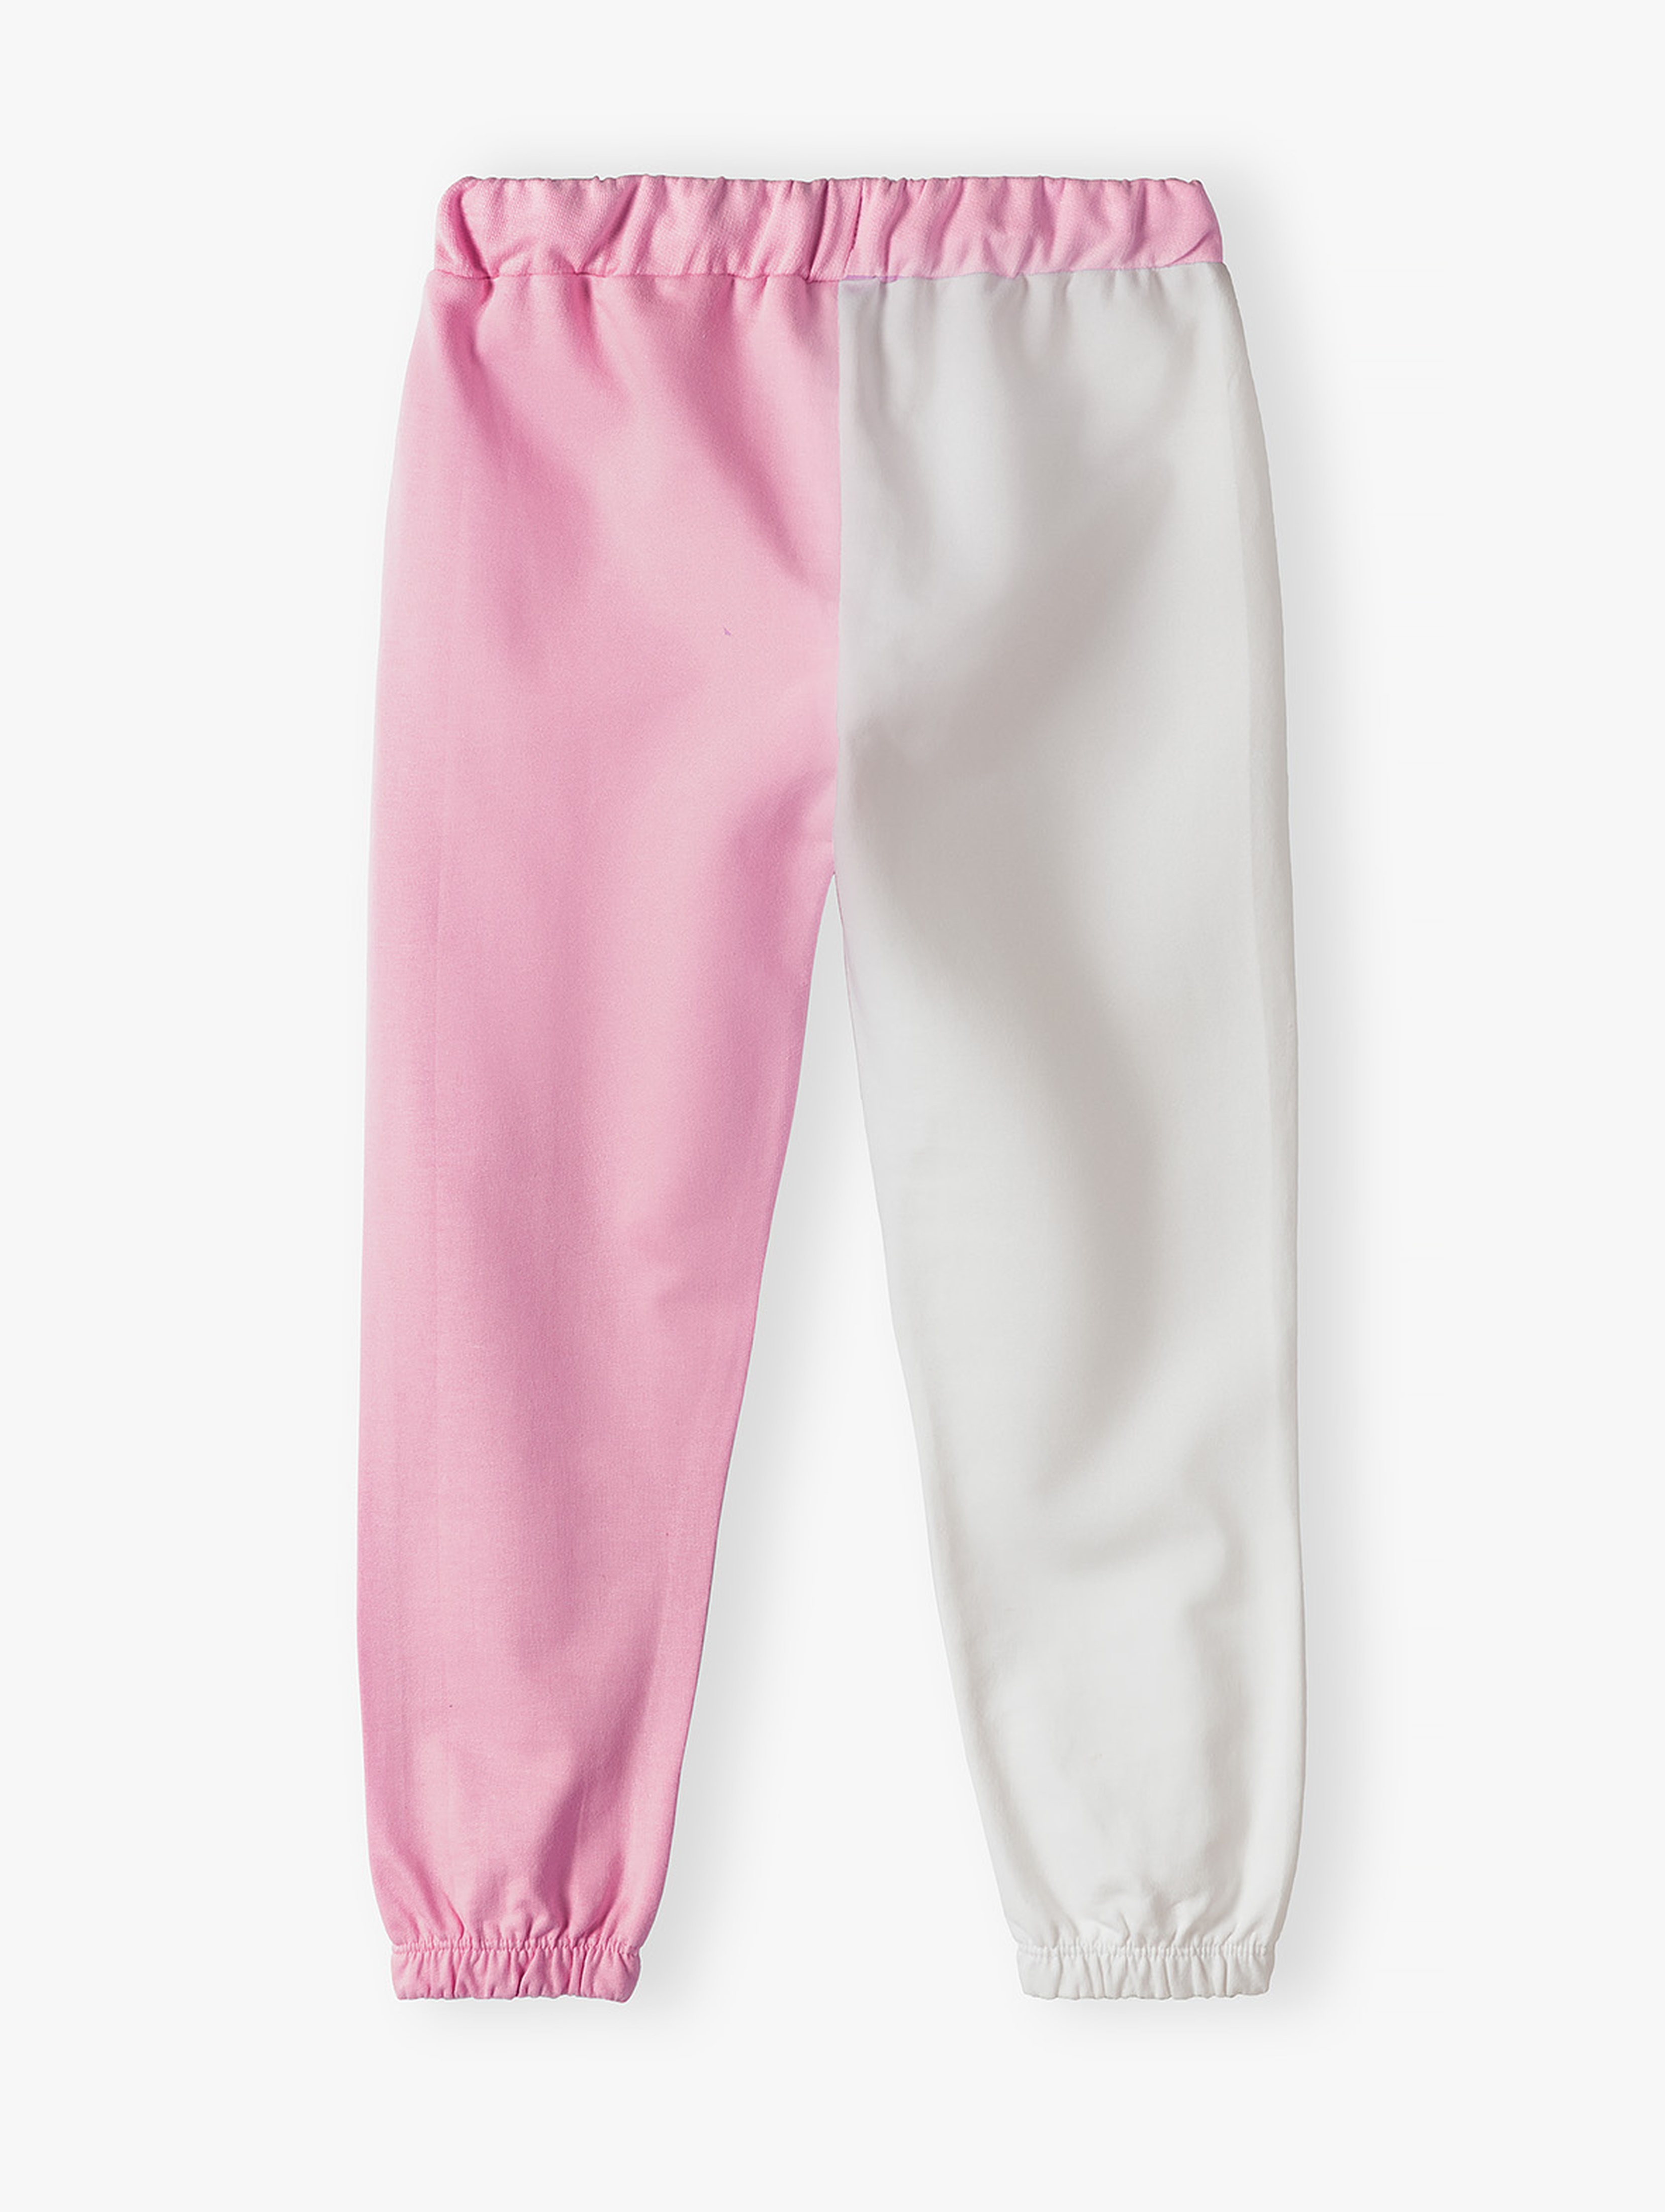 Dresowe spodnie dla dziewczynki - kolorowe nogawki - 5.10.15.